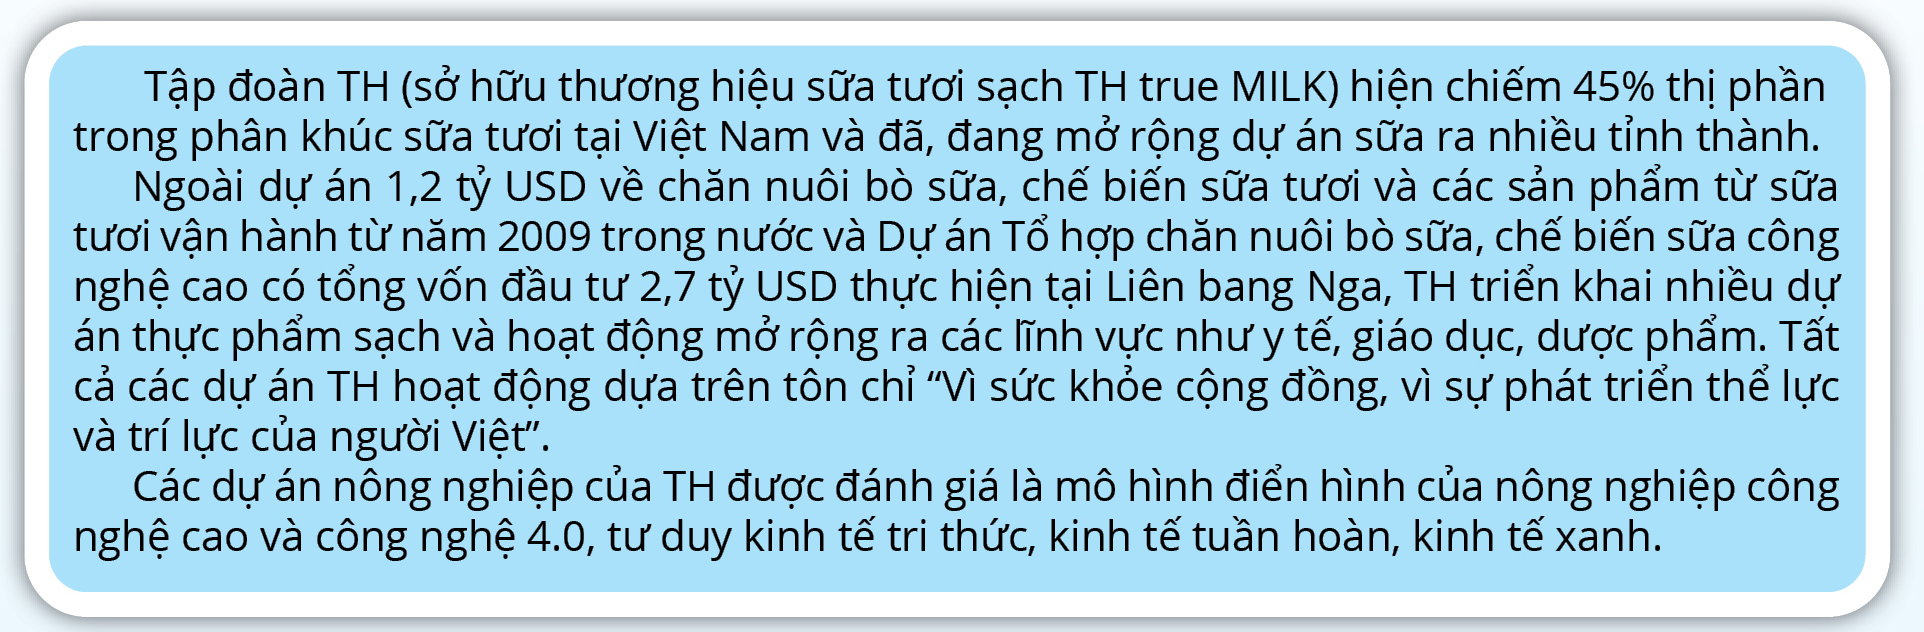 Doanh nghiệp sữa tươi hàng đầu Việt Nam tăng trưởng giữa đại dịch - Ảnh 7.